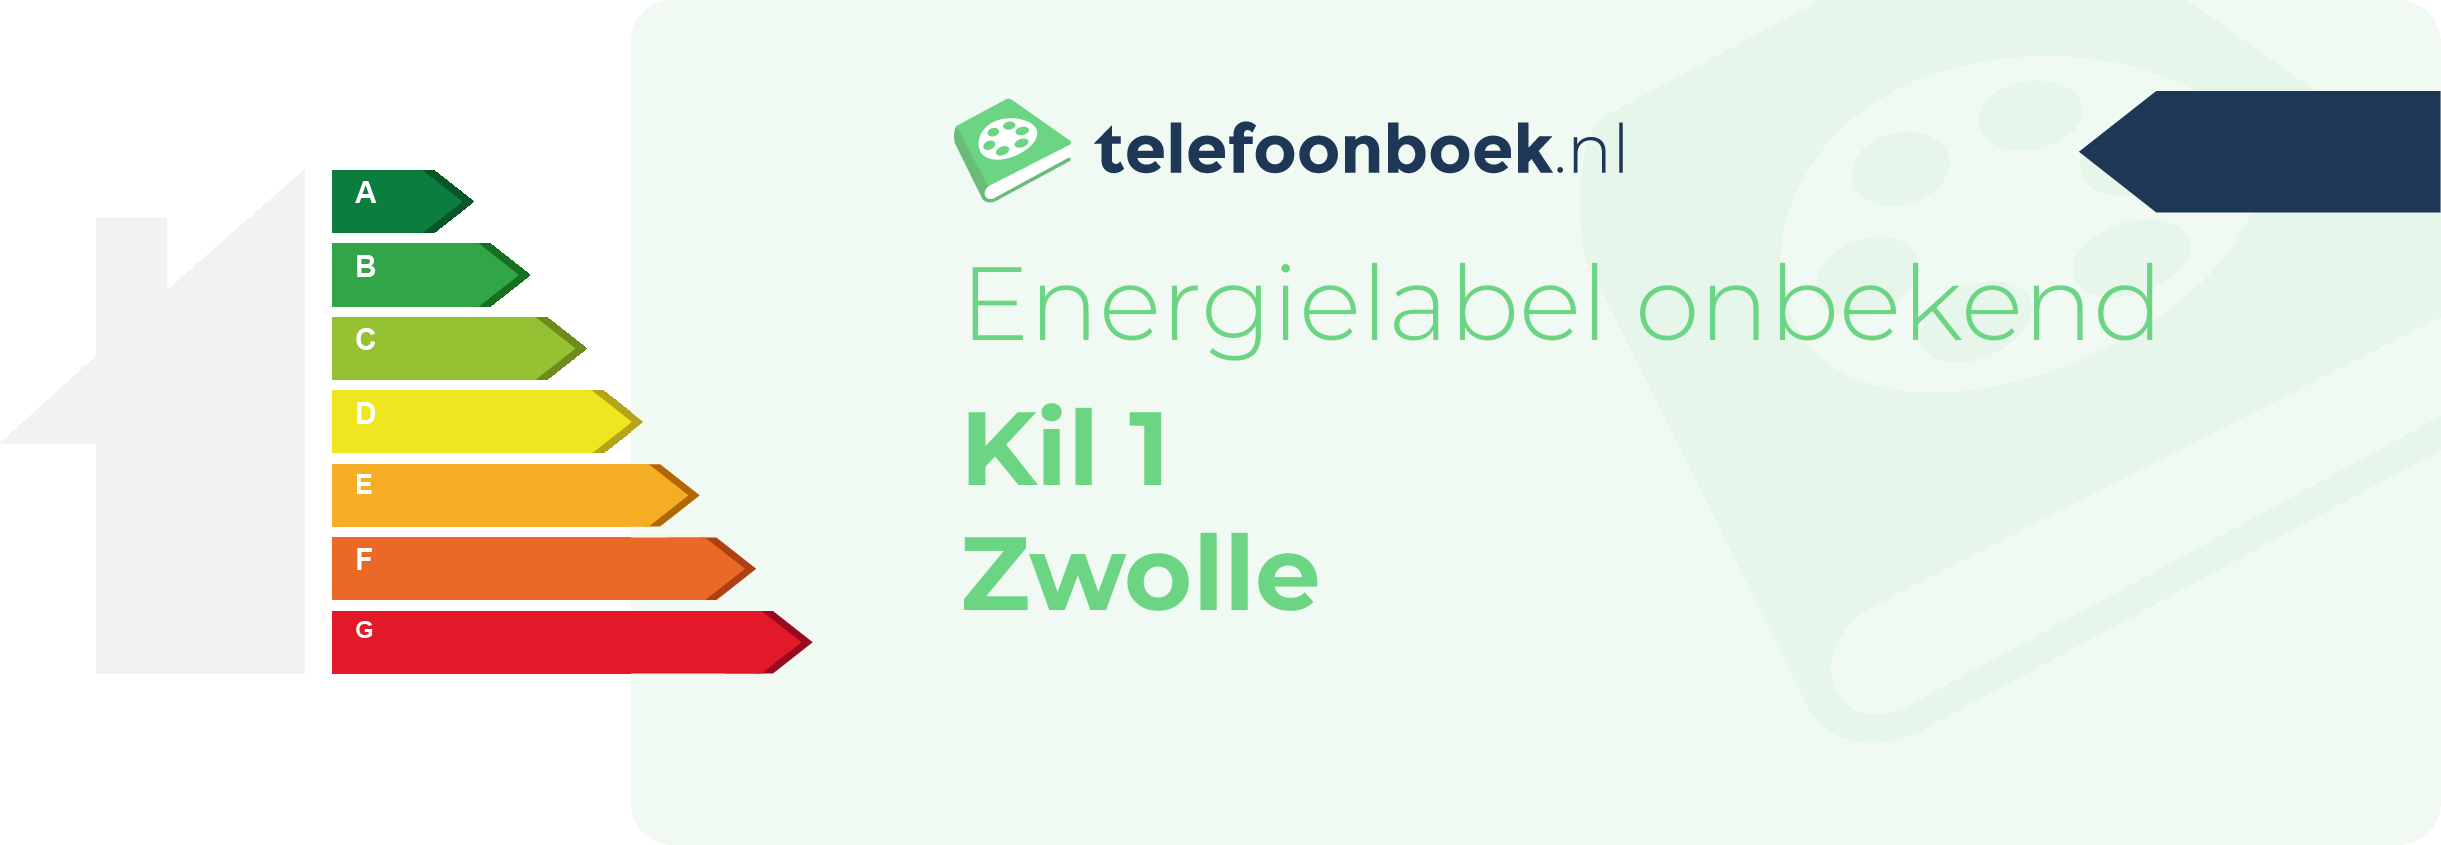 Energielabel Kil 1 Zwolle